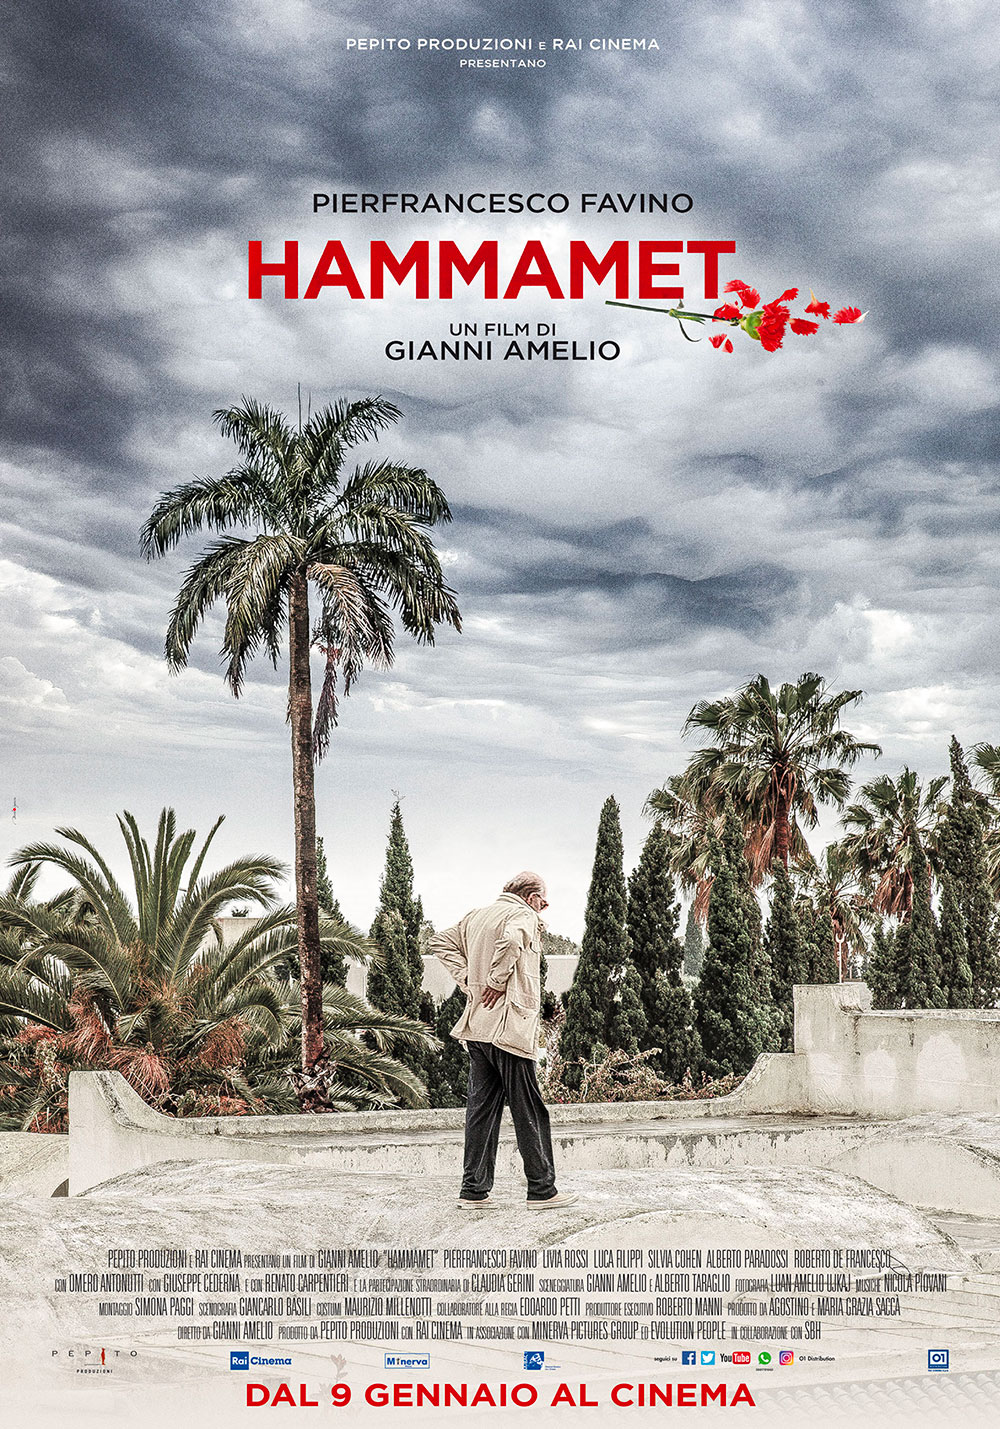 In foto Pierfrancesco Favino (55 anni) Dall'articolo: Hammamet, il poster ufficiale del film.